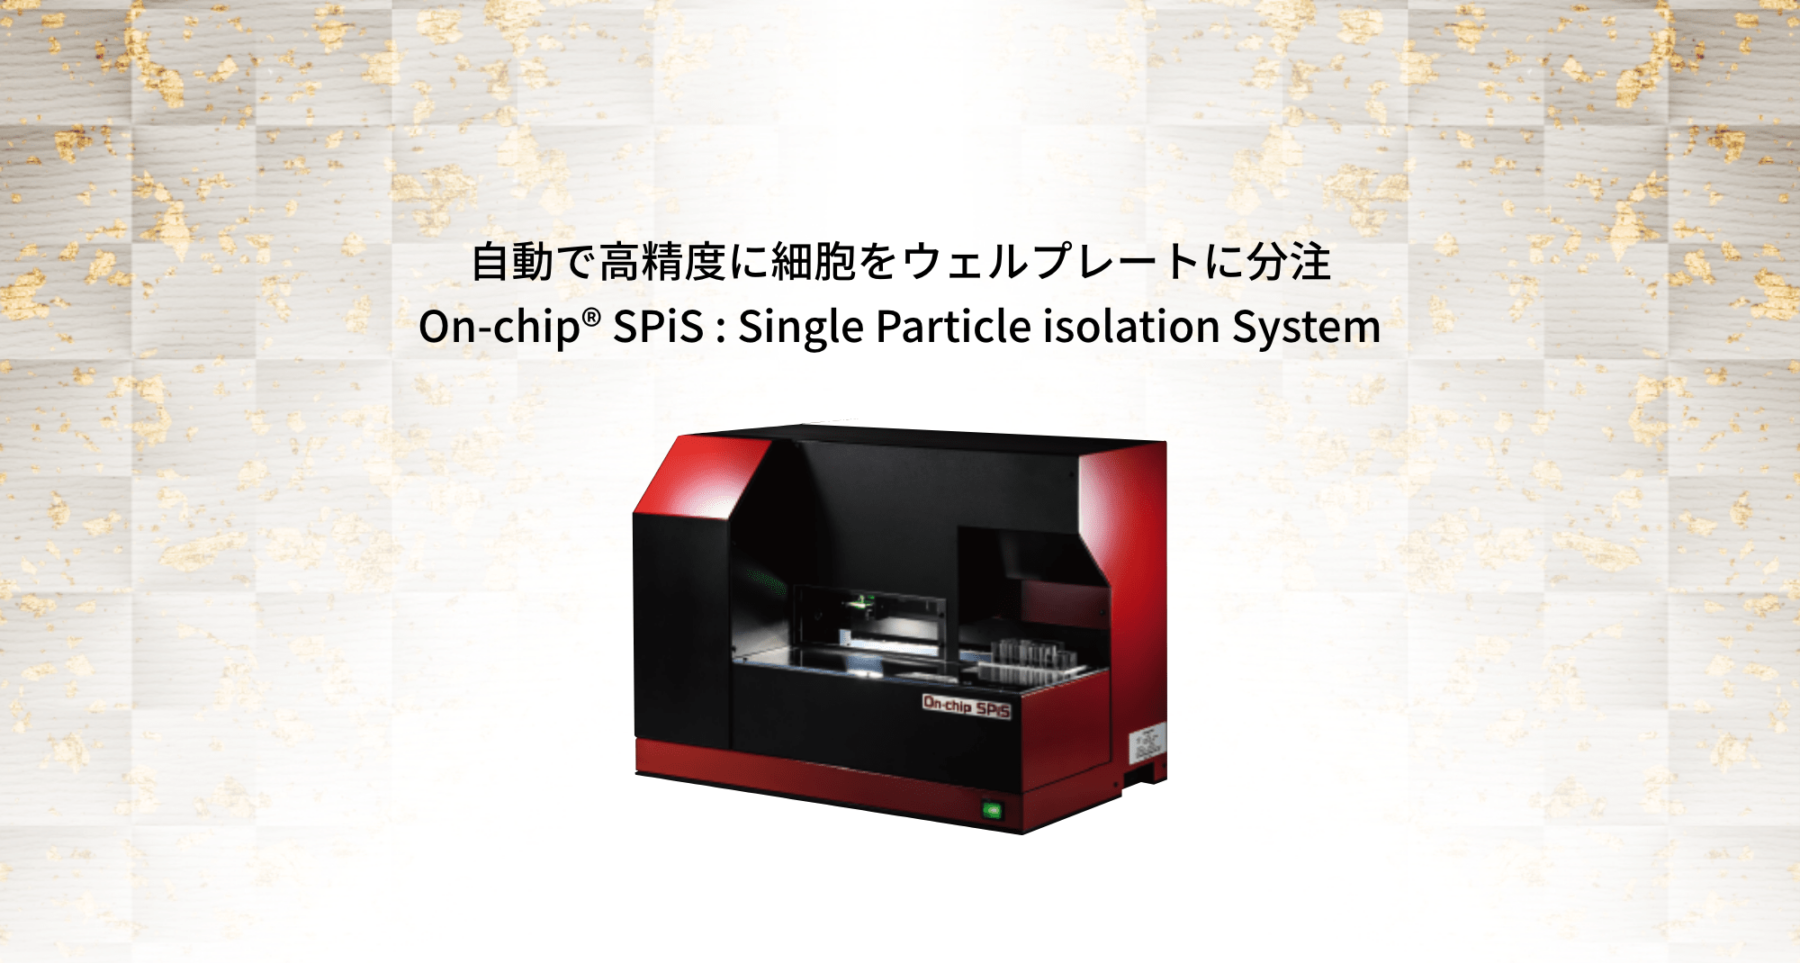 自動で高精度に細胞をウェルプレートに分注 On-chip® SPiS : Single Particle isolation System 